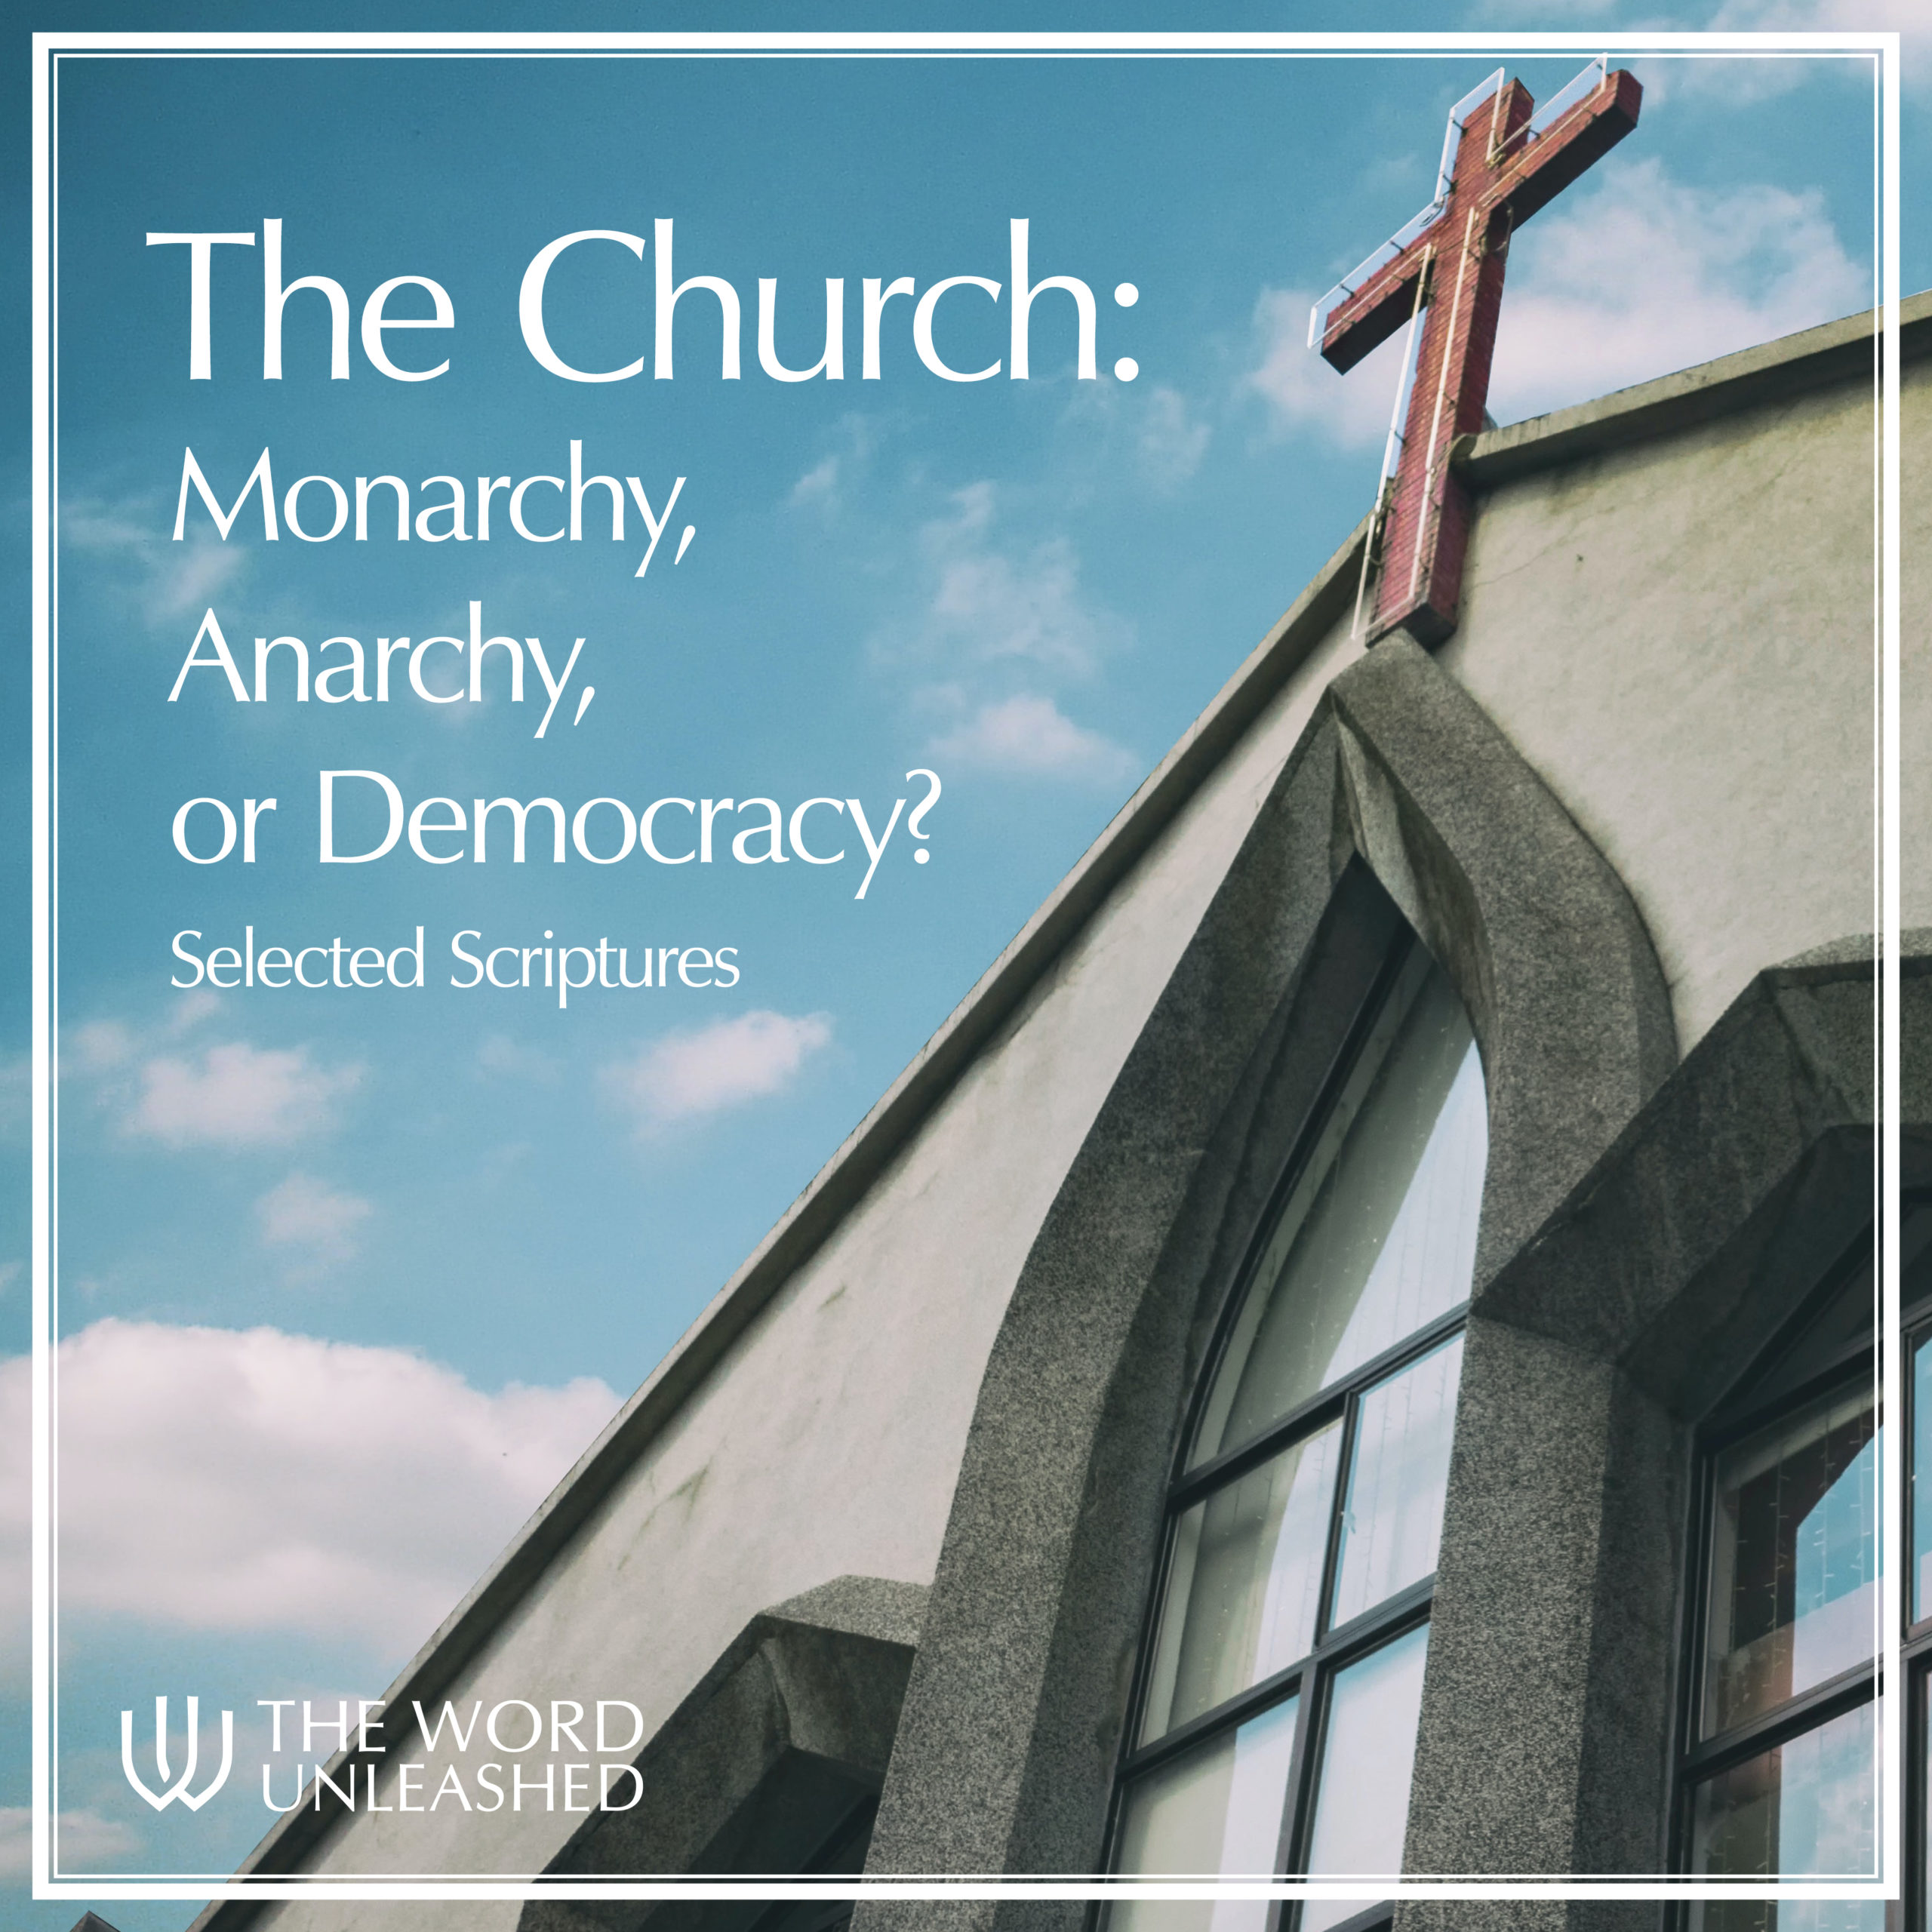 The Church: Monarchy, Anarchy, or Democracy?